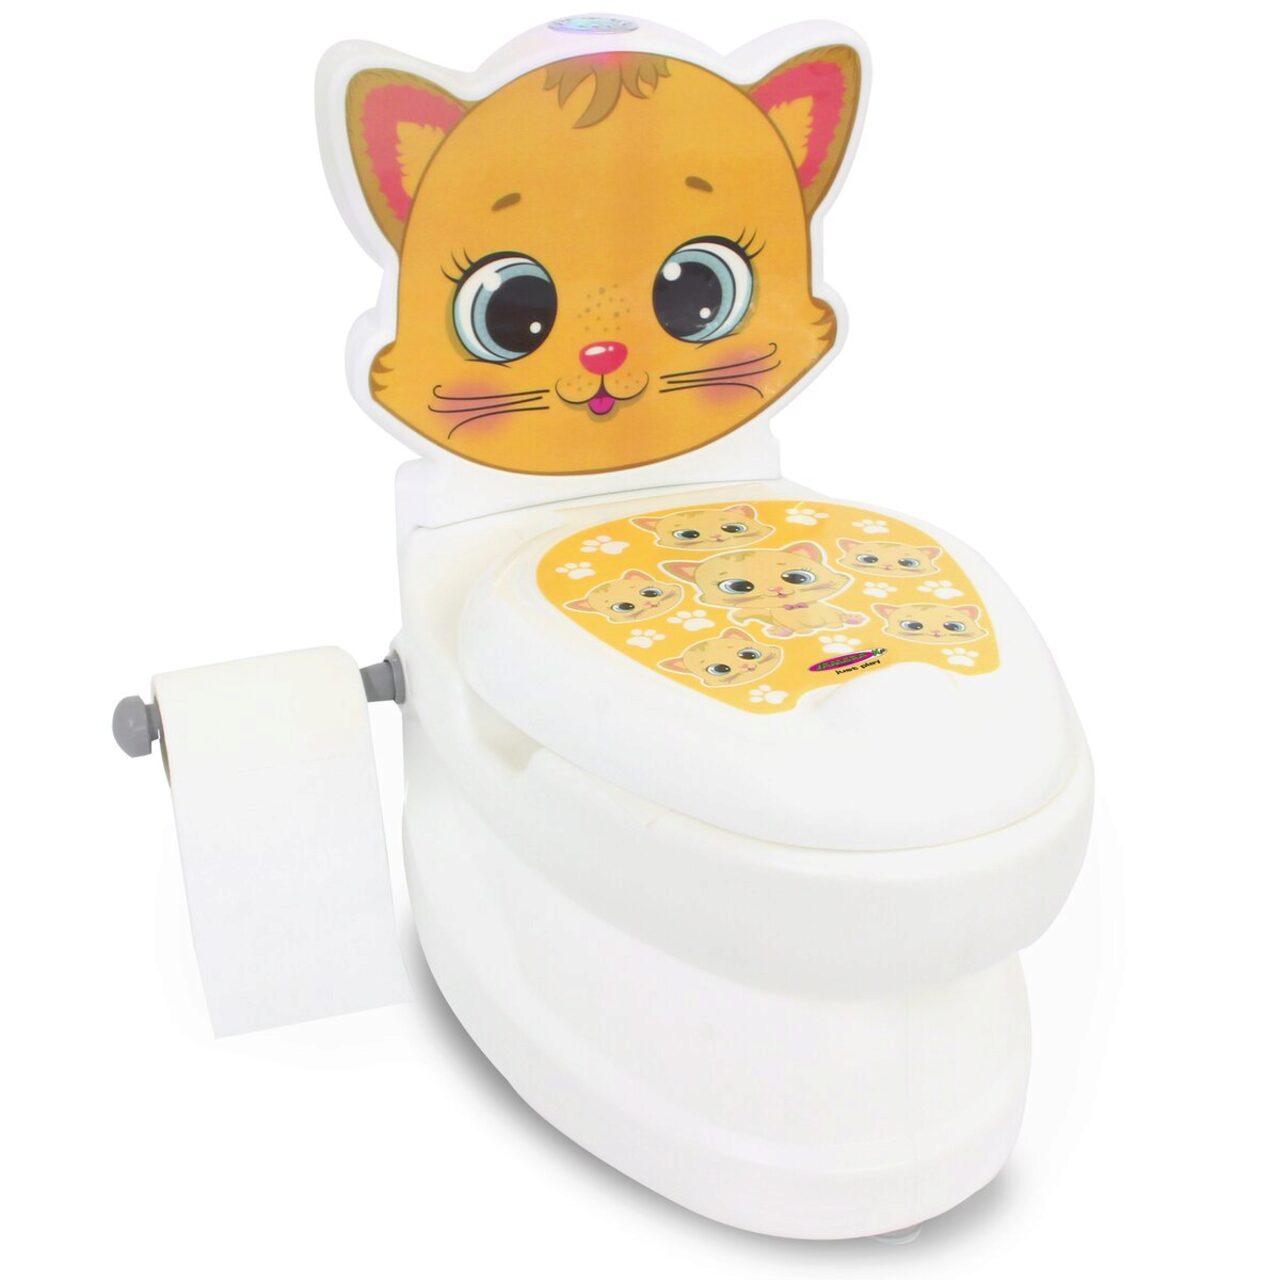 JAMARA 460955 Toilette Meine kleine Spülsound Toilettenpapierhalter Katze mit und